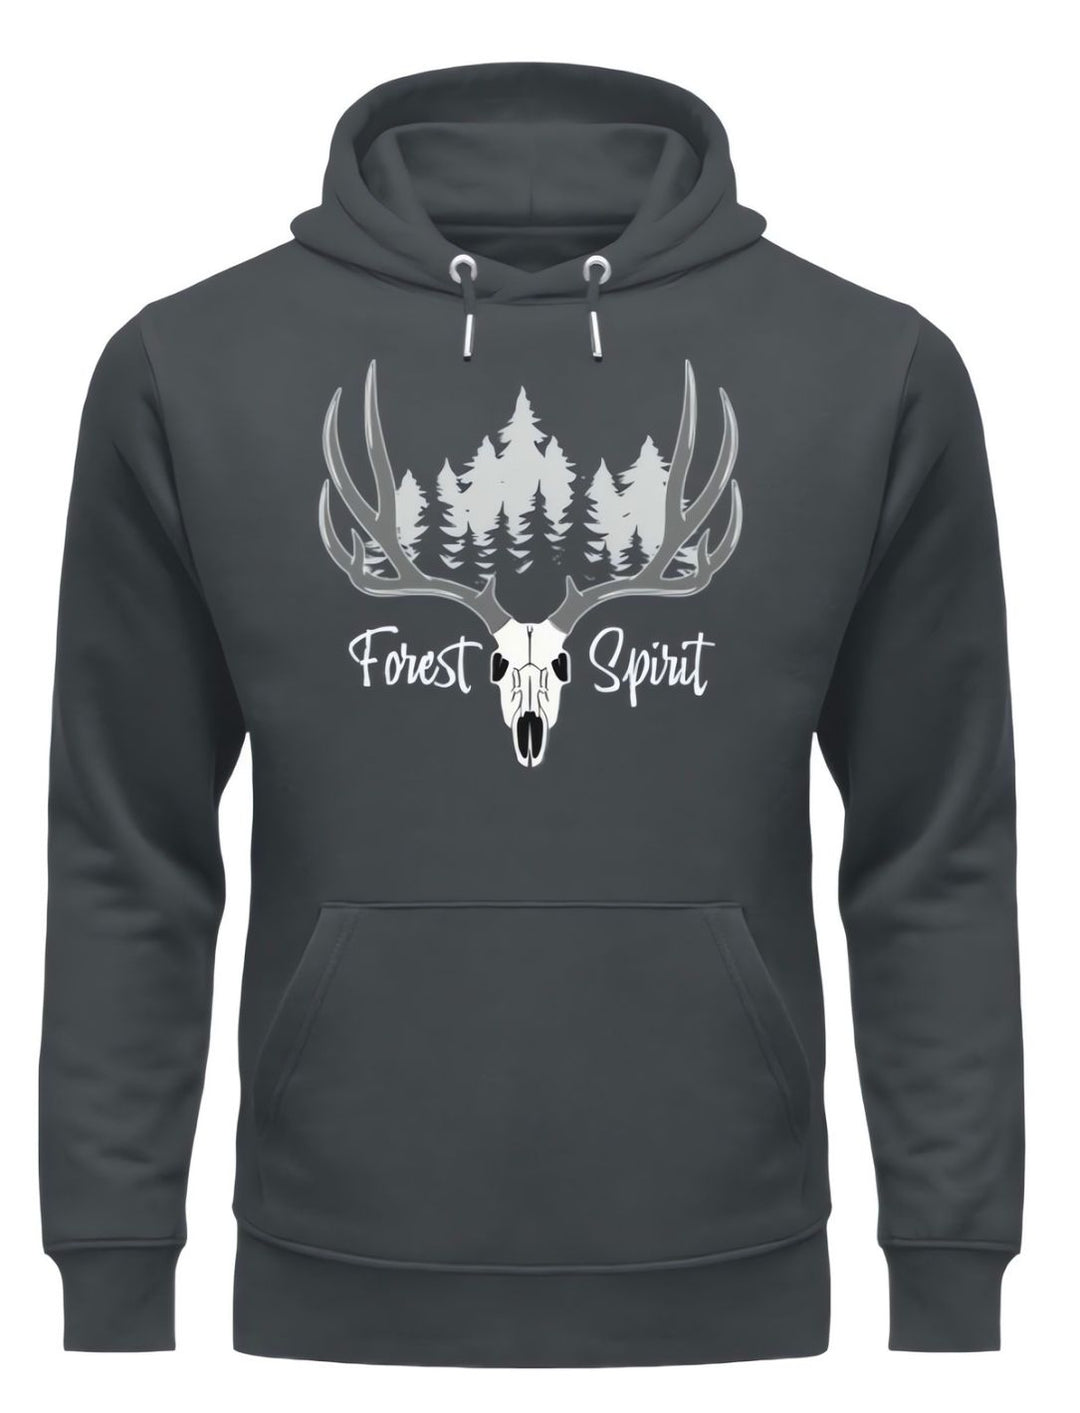 Forest Spirit - Unisex Hoodie - keltisches Design in India Ink Grey. Von Runental.de